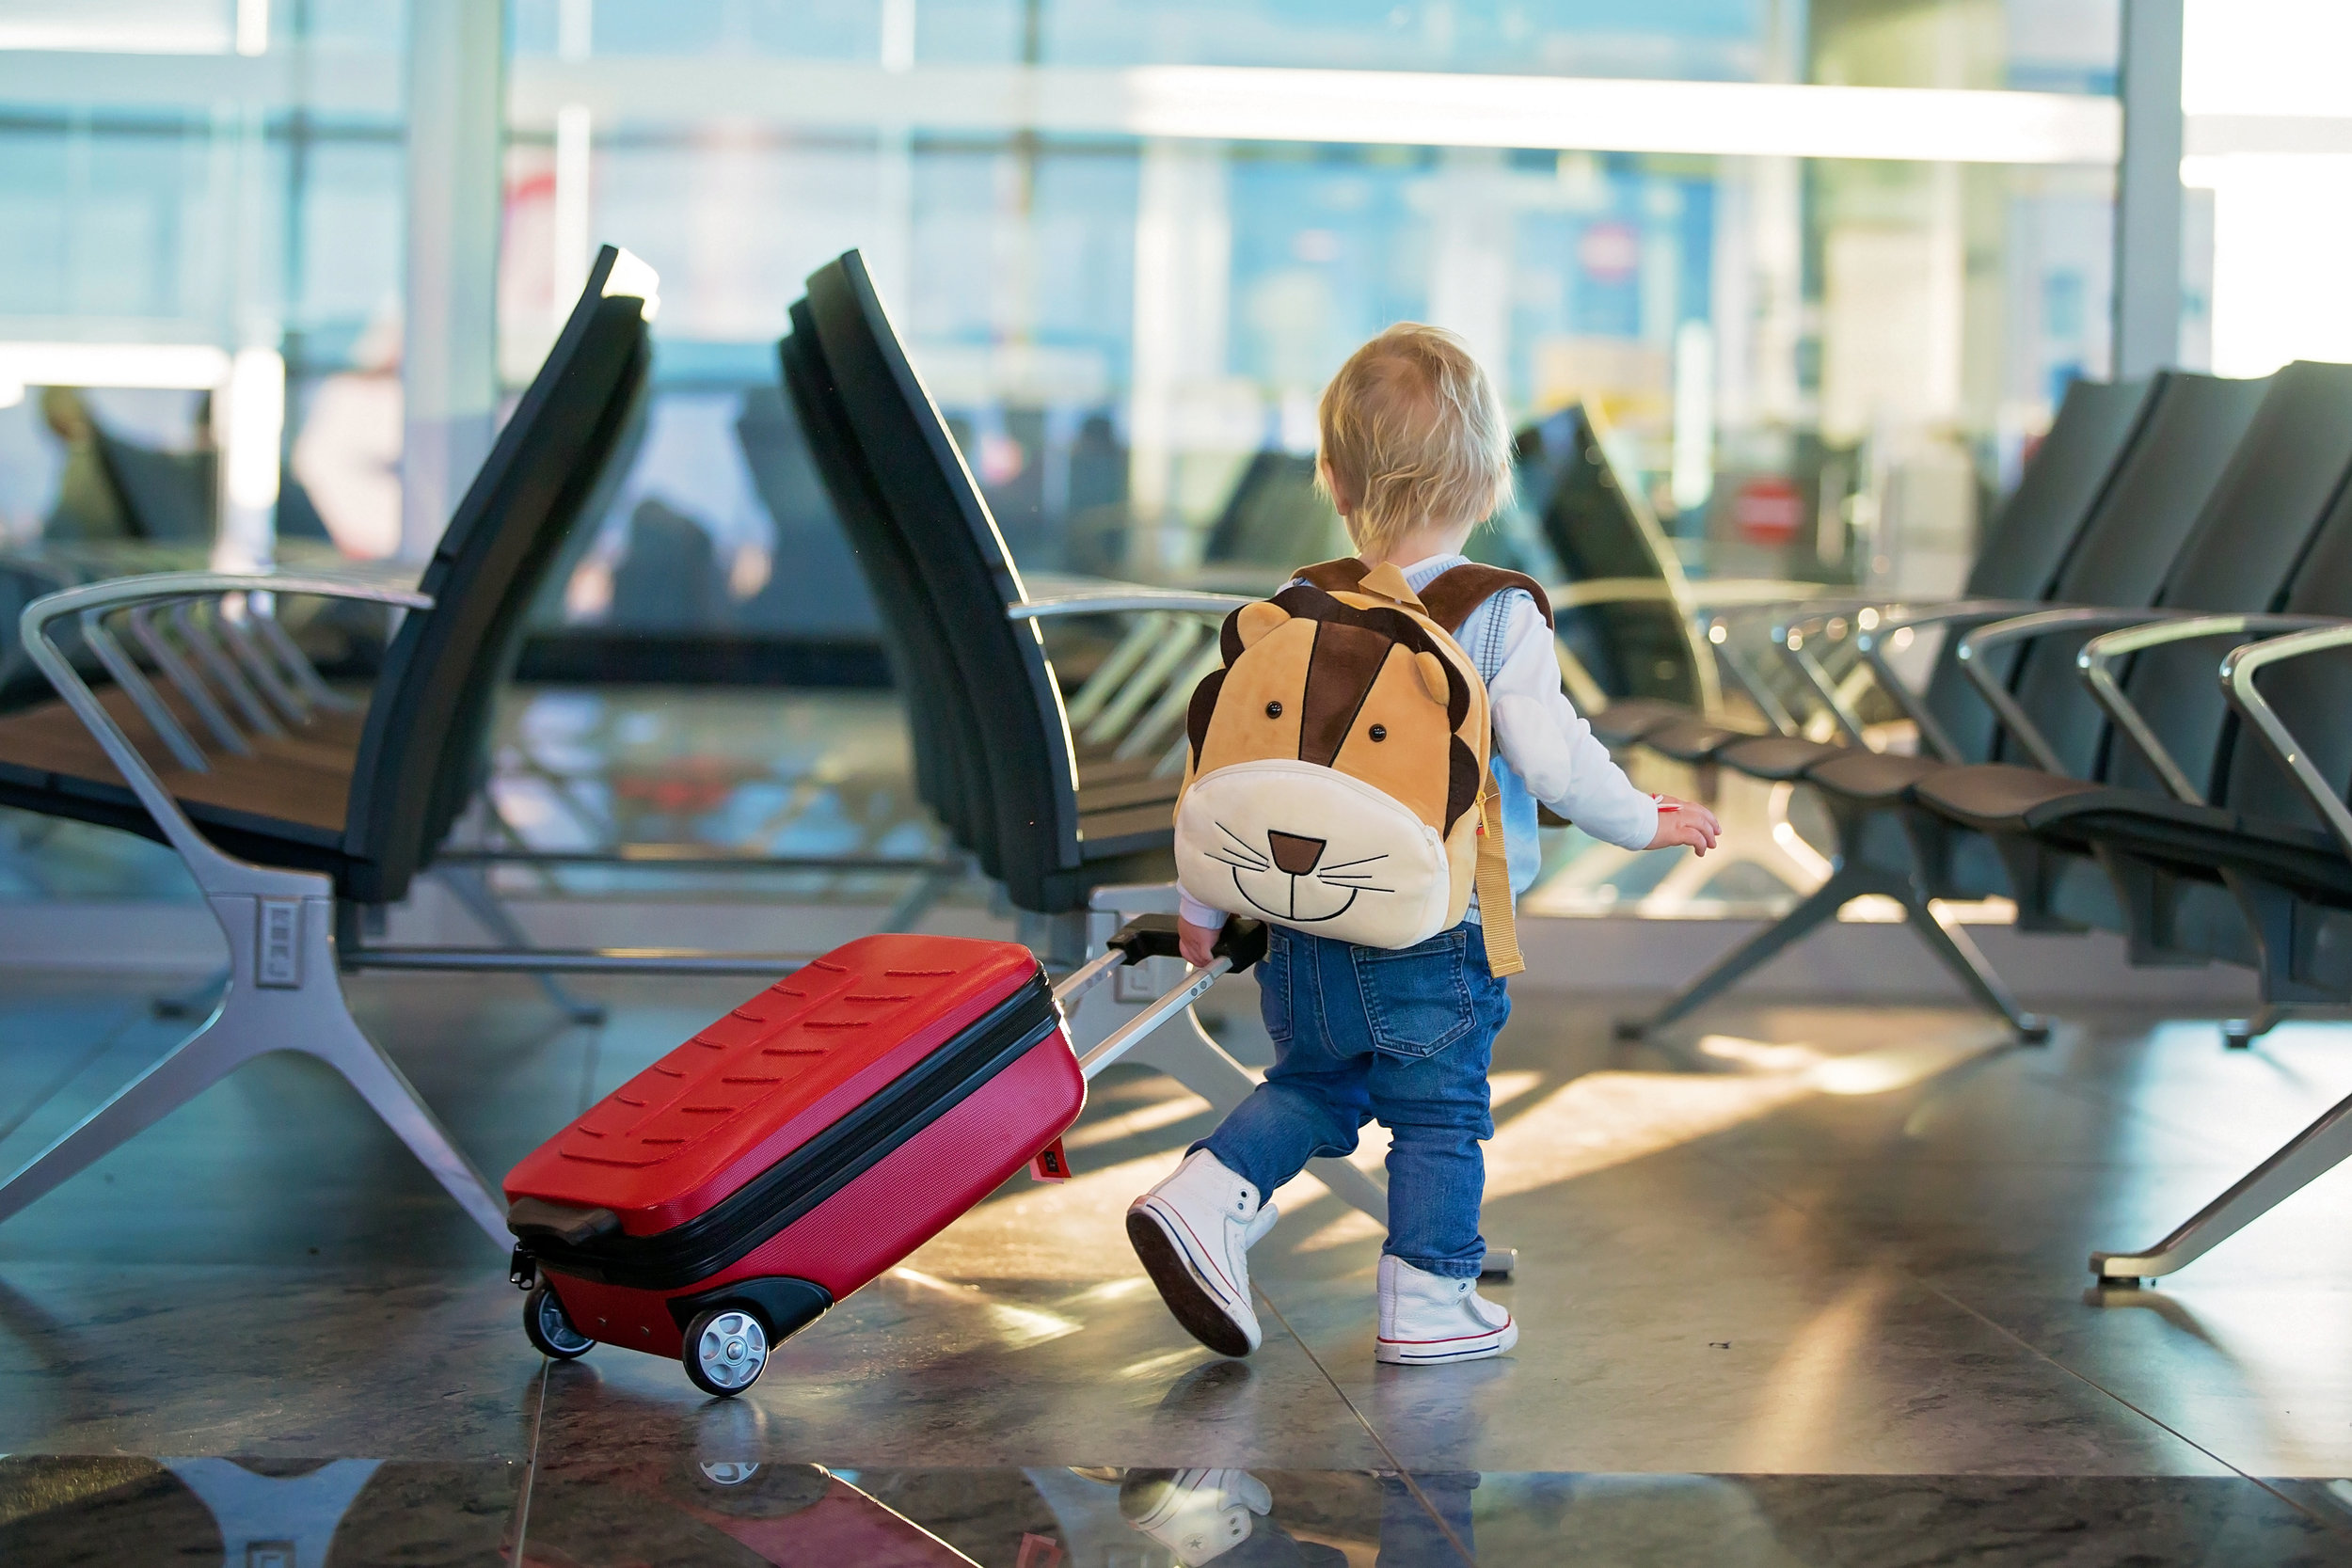 Liste d'items pour un voyage en avion avec un enfant en bas âge